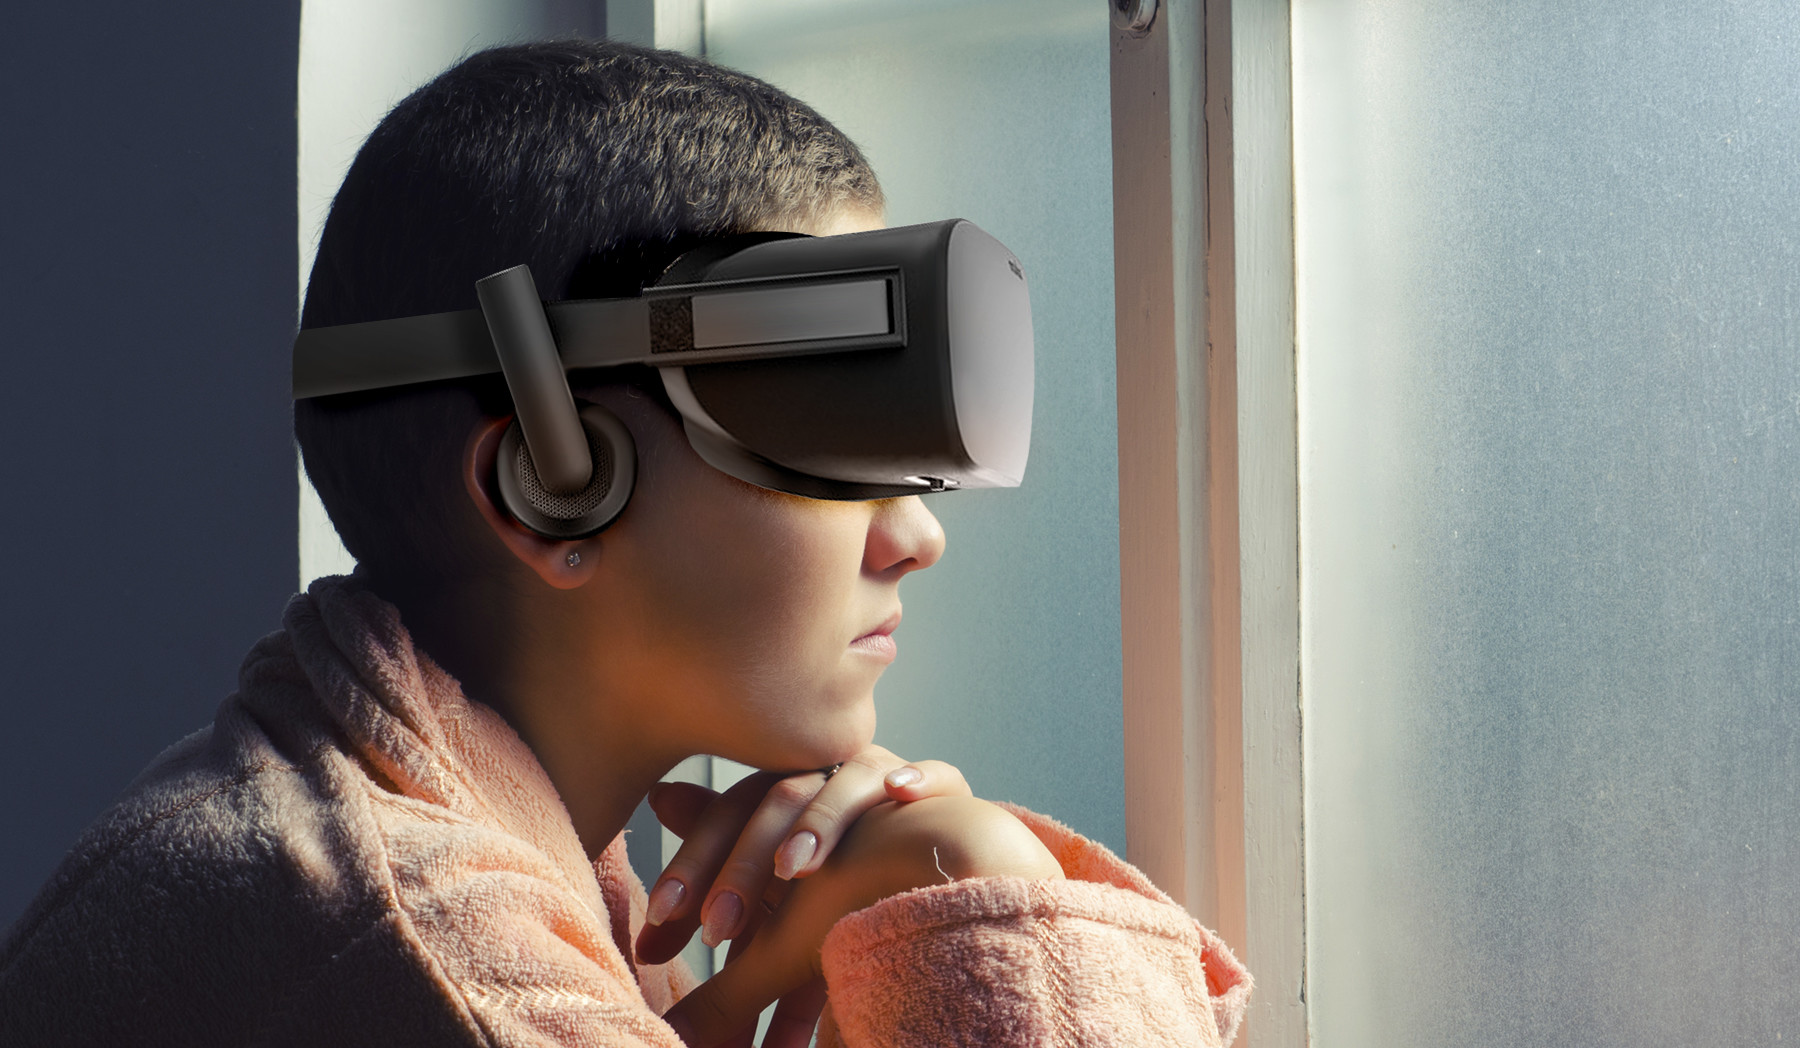 واقعیت مجازی راهی جدید برای درمان اختلالات روانی